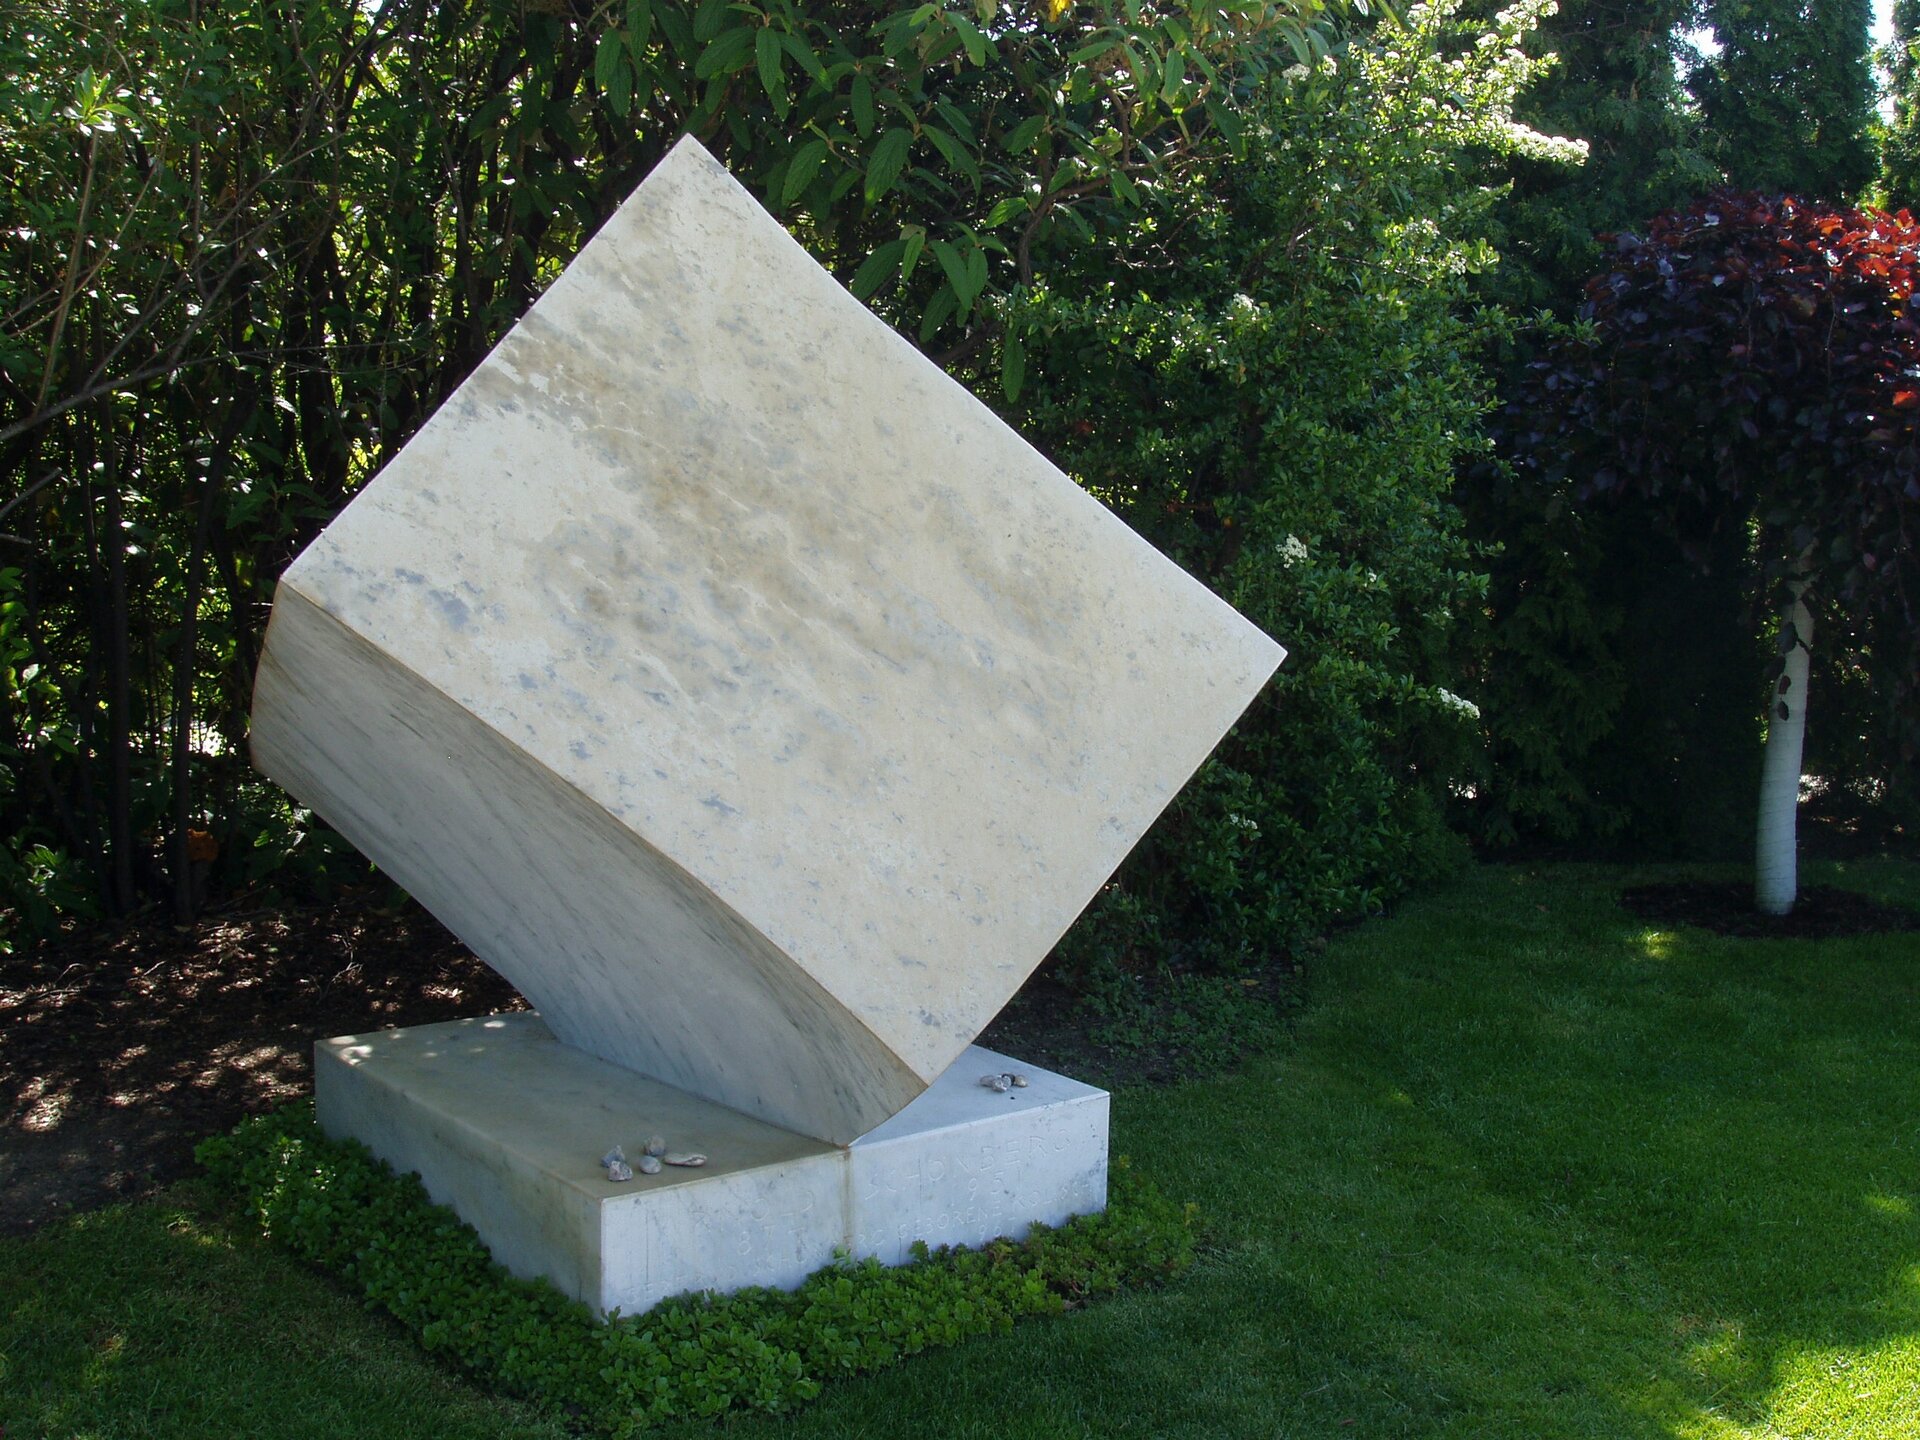 Fotografia przedstawia grób Schönberga w Wiedniu. Nagrobek z marmuru w kształcie sześcianu ustawionego na jednym z narożników. Dookoła zieleń.